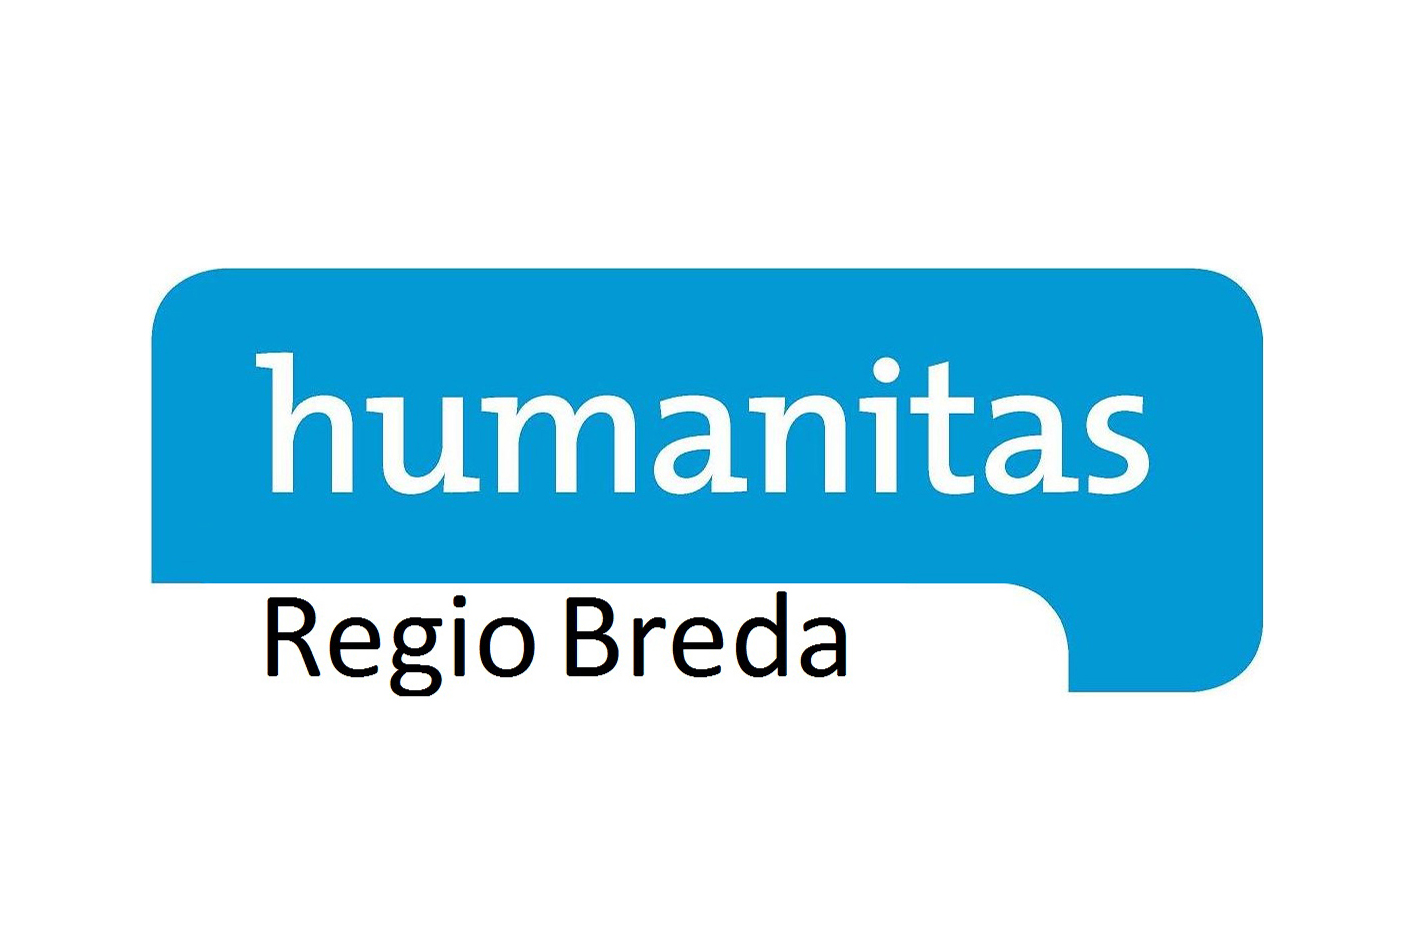 Humanitas Regio Breda